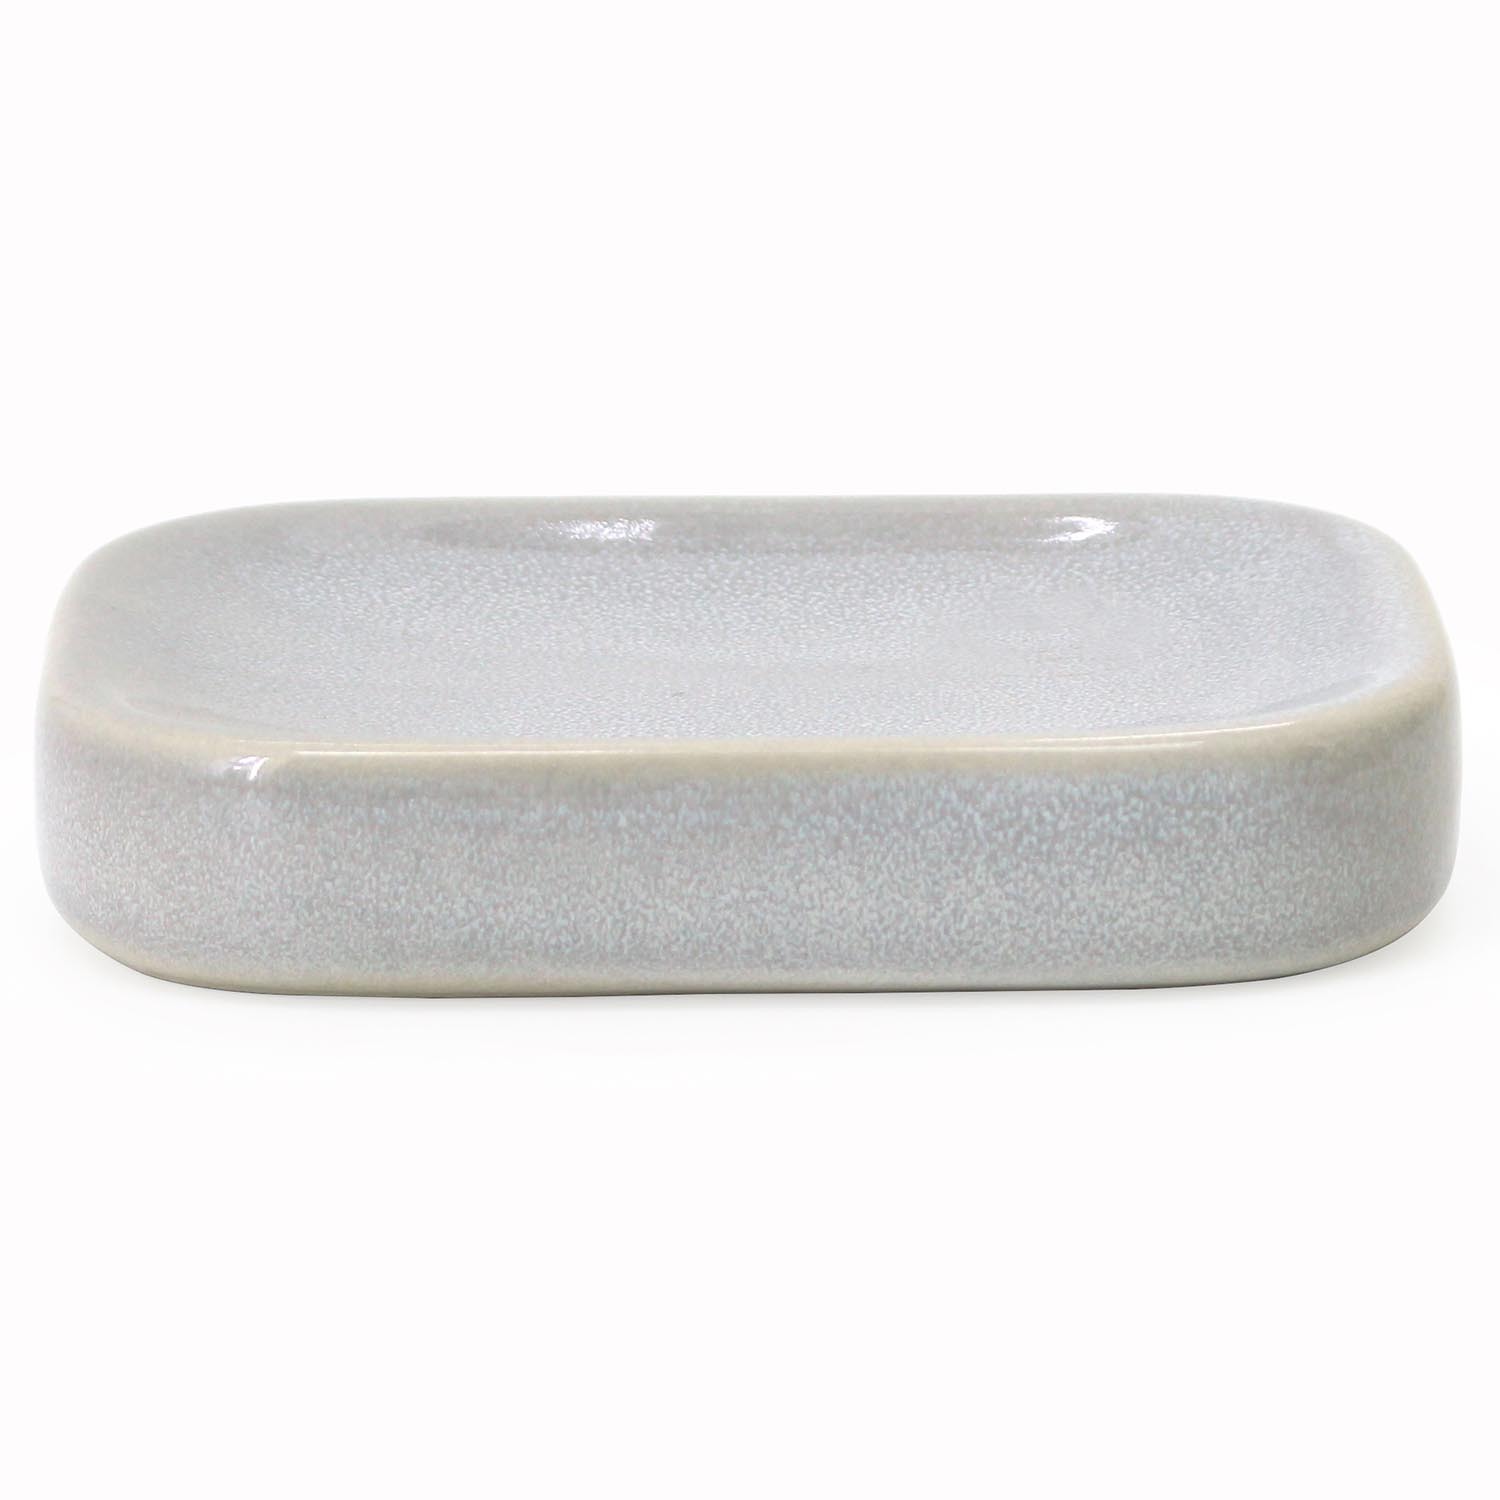 Stone Glaze Soap Dish - White Image